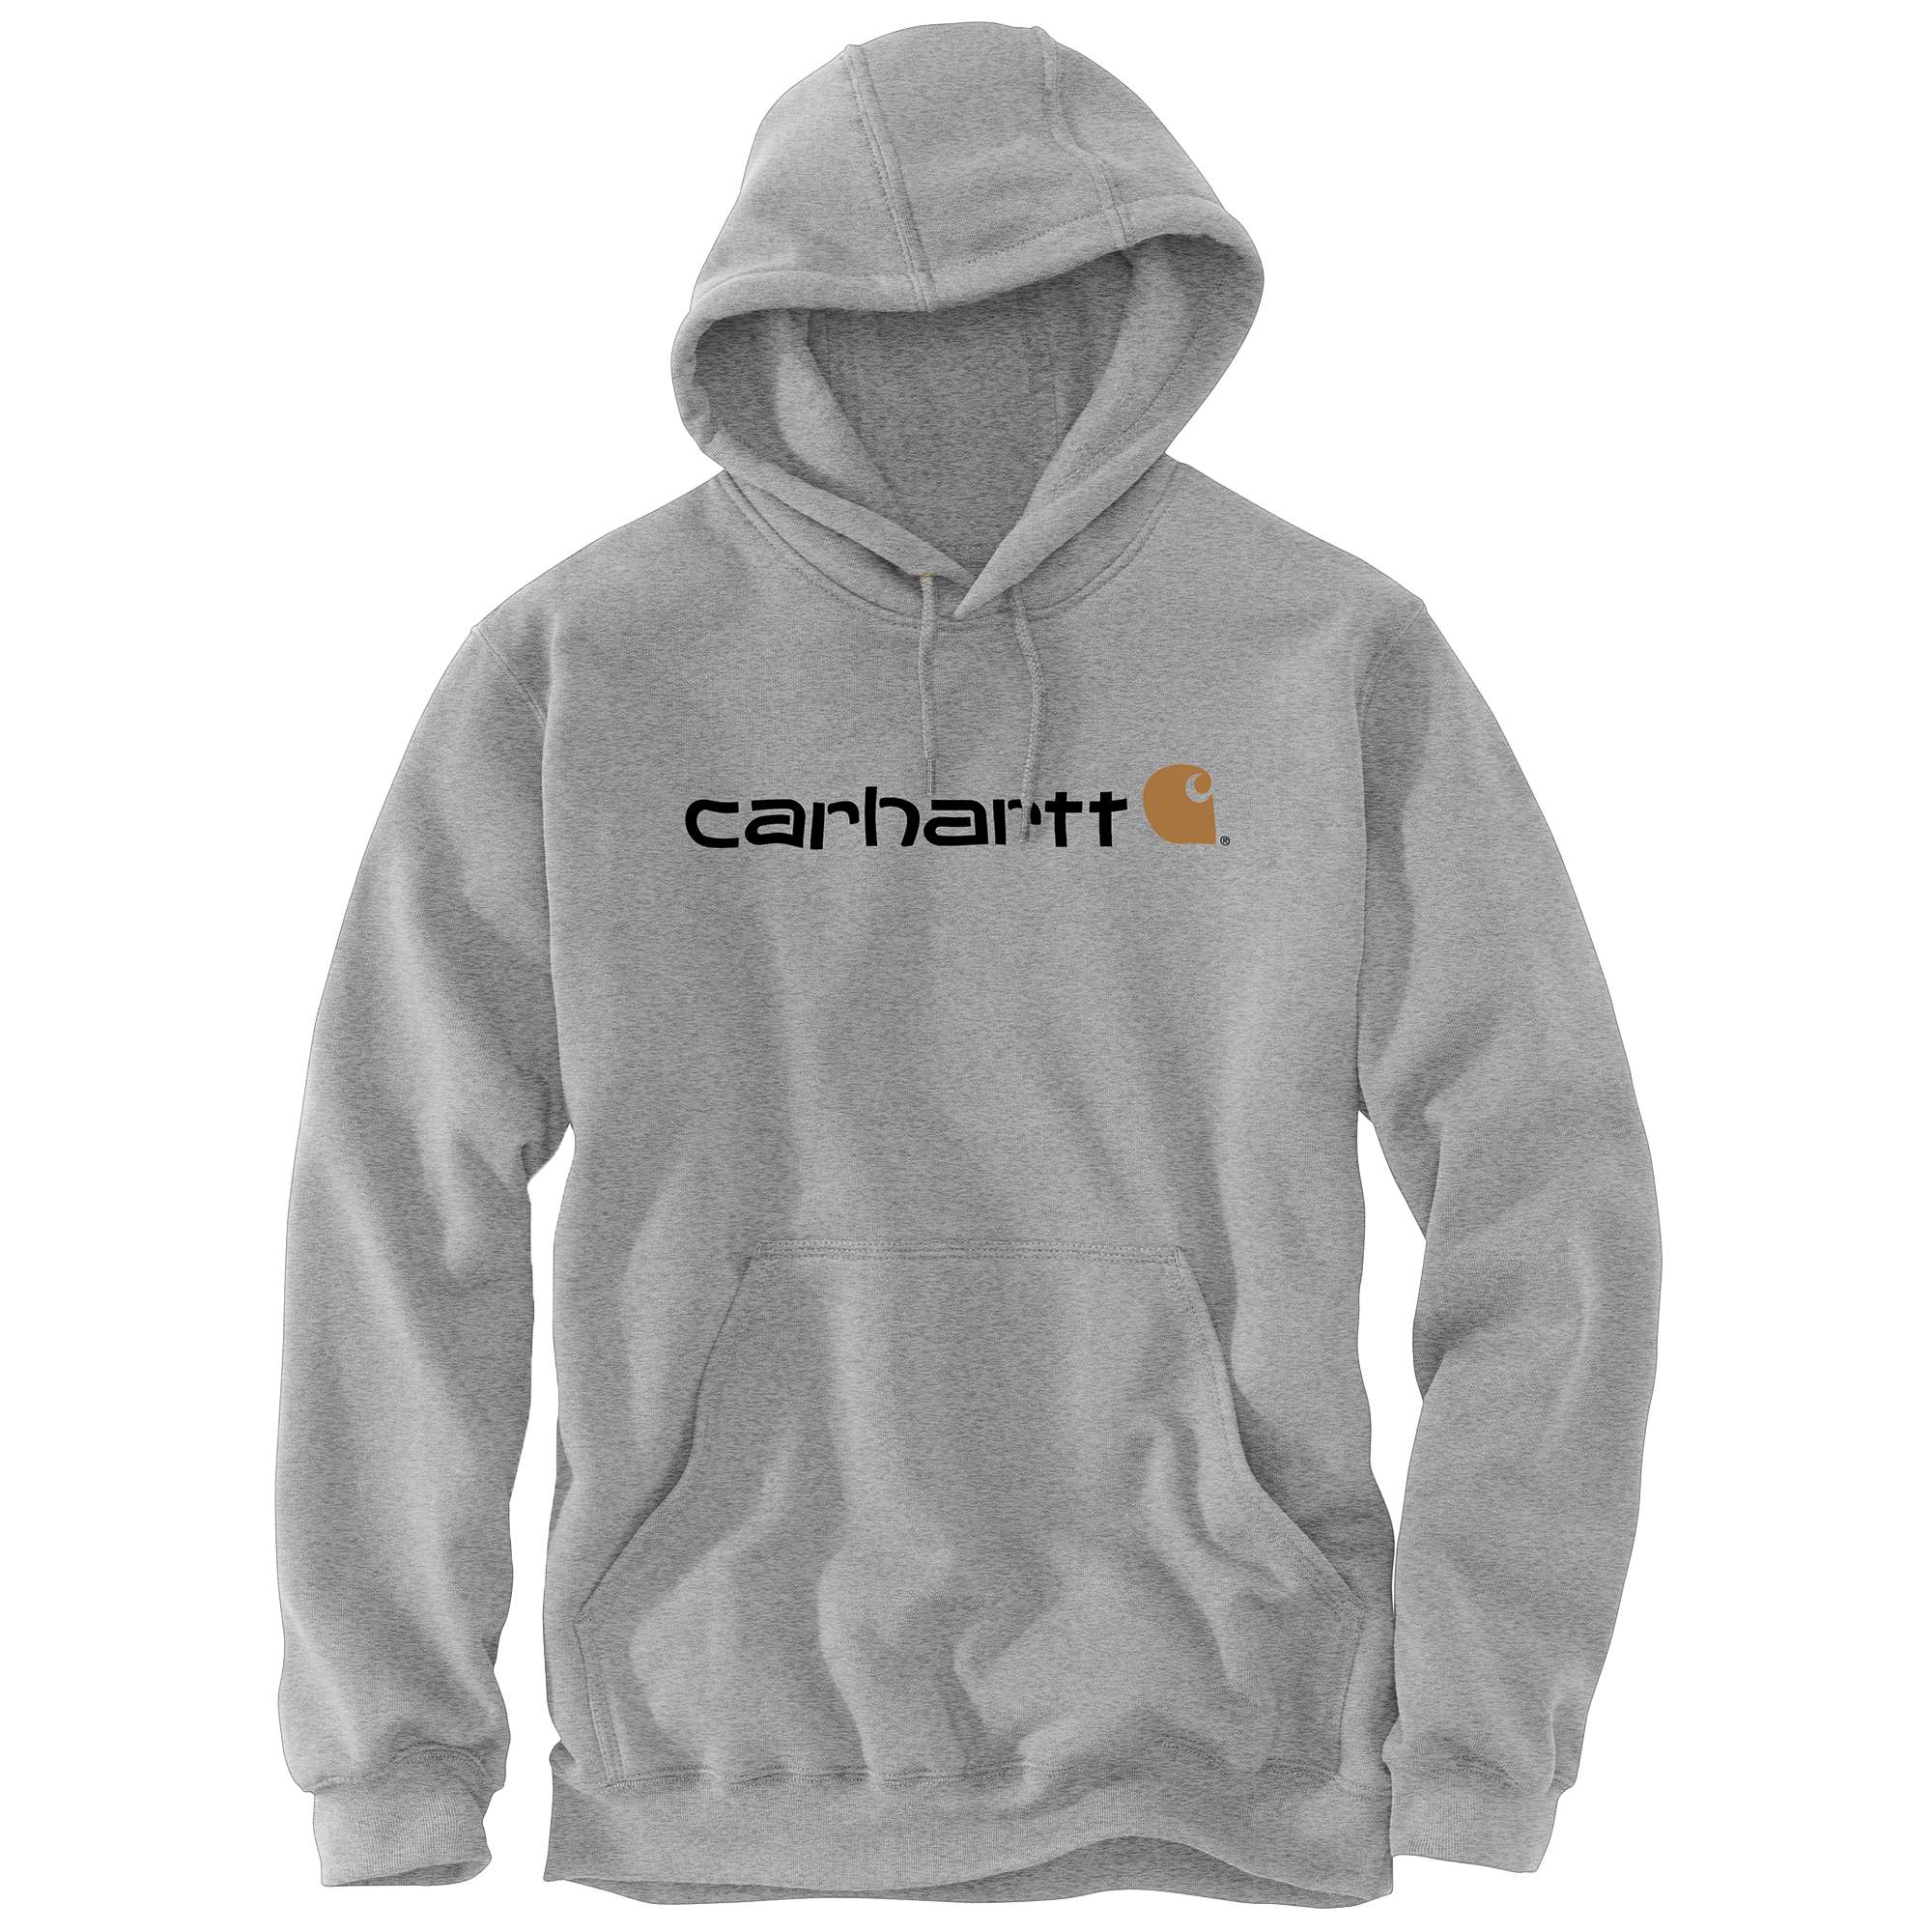 Carhartt Hoodies - Loose fit herensweater met capuchon en carhartt-logo Grijs - S